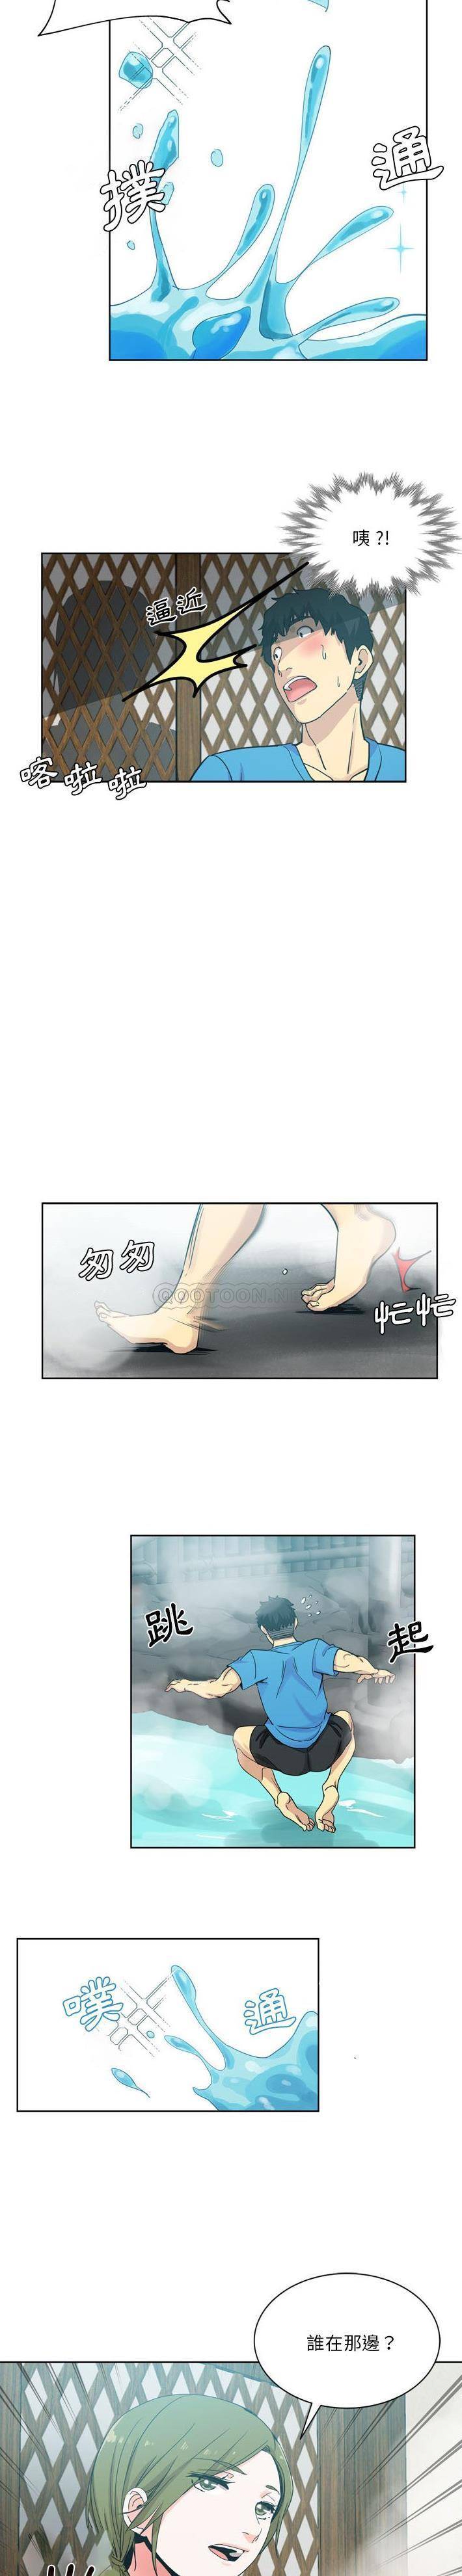 韩国污漫画 危險純友誼 第17话 14